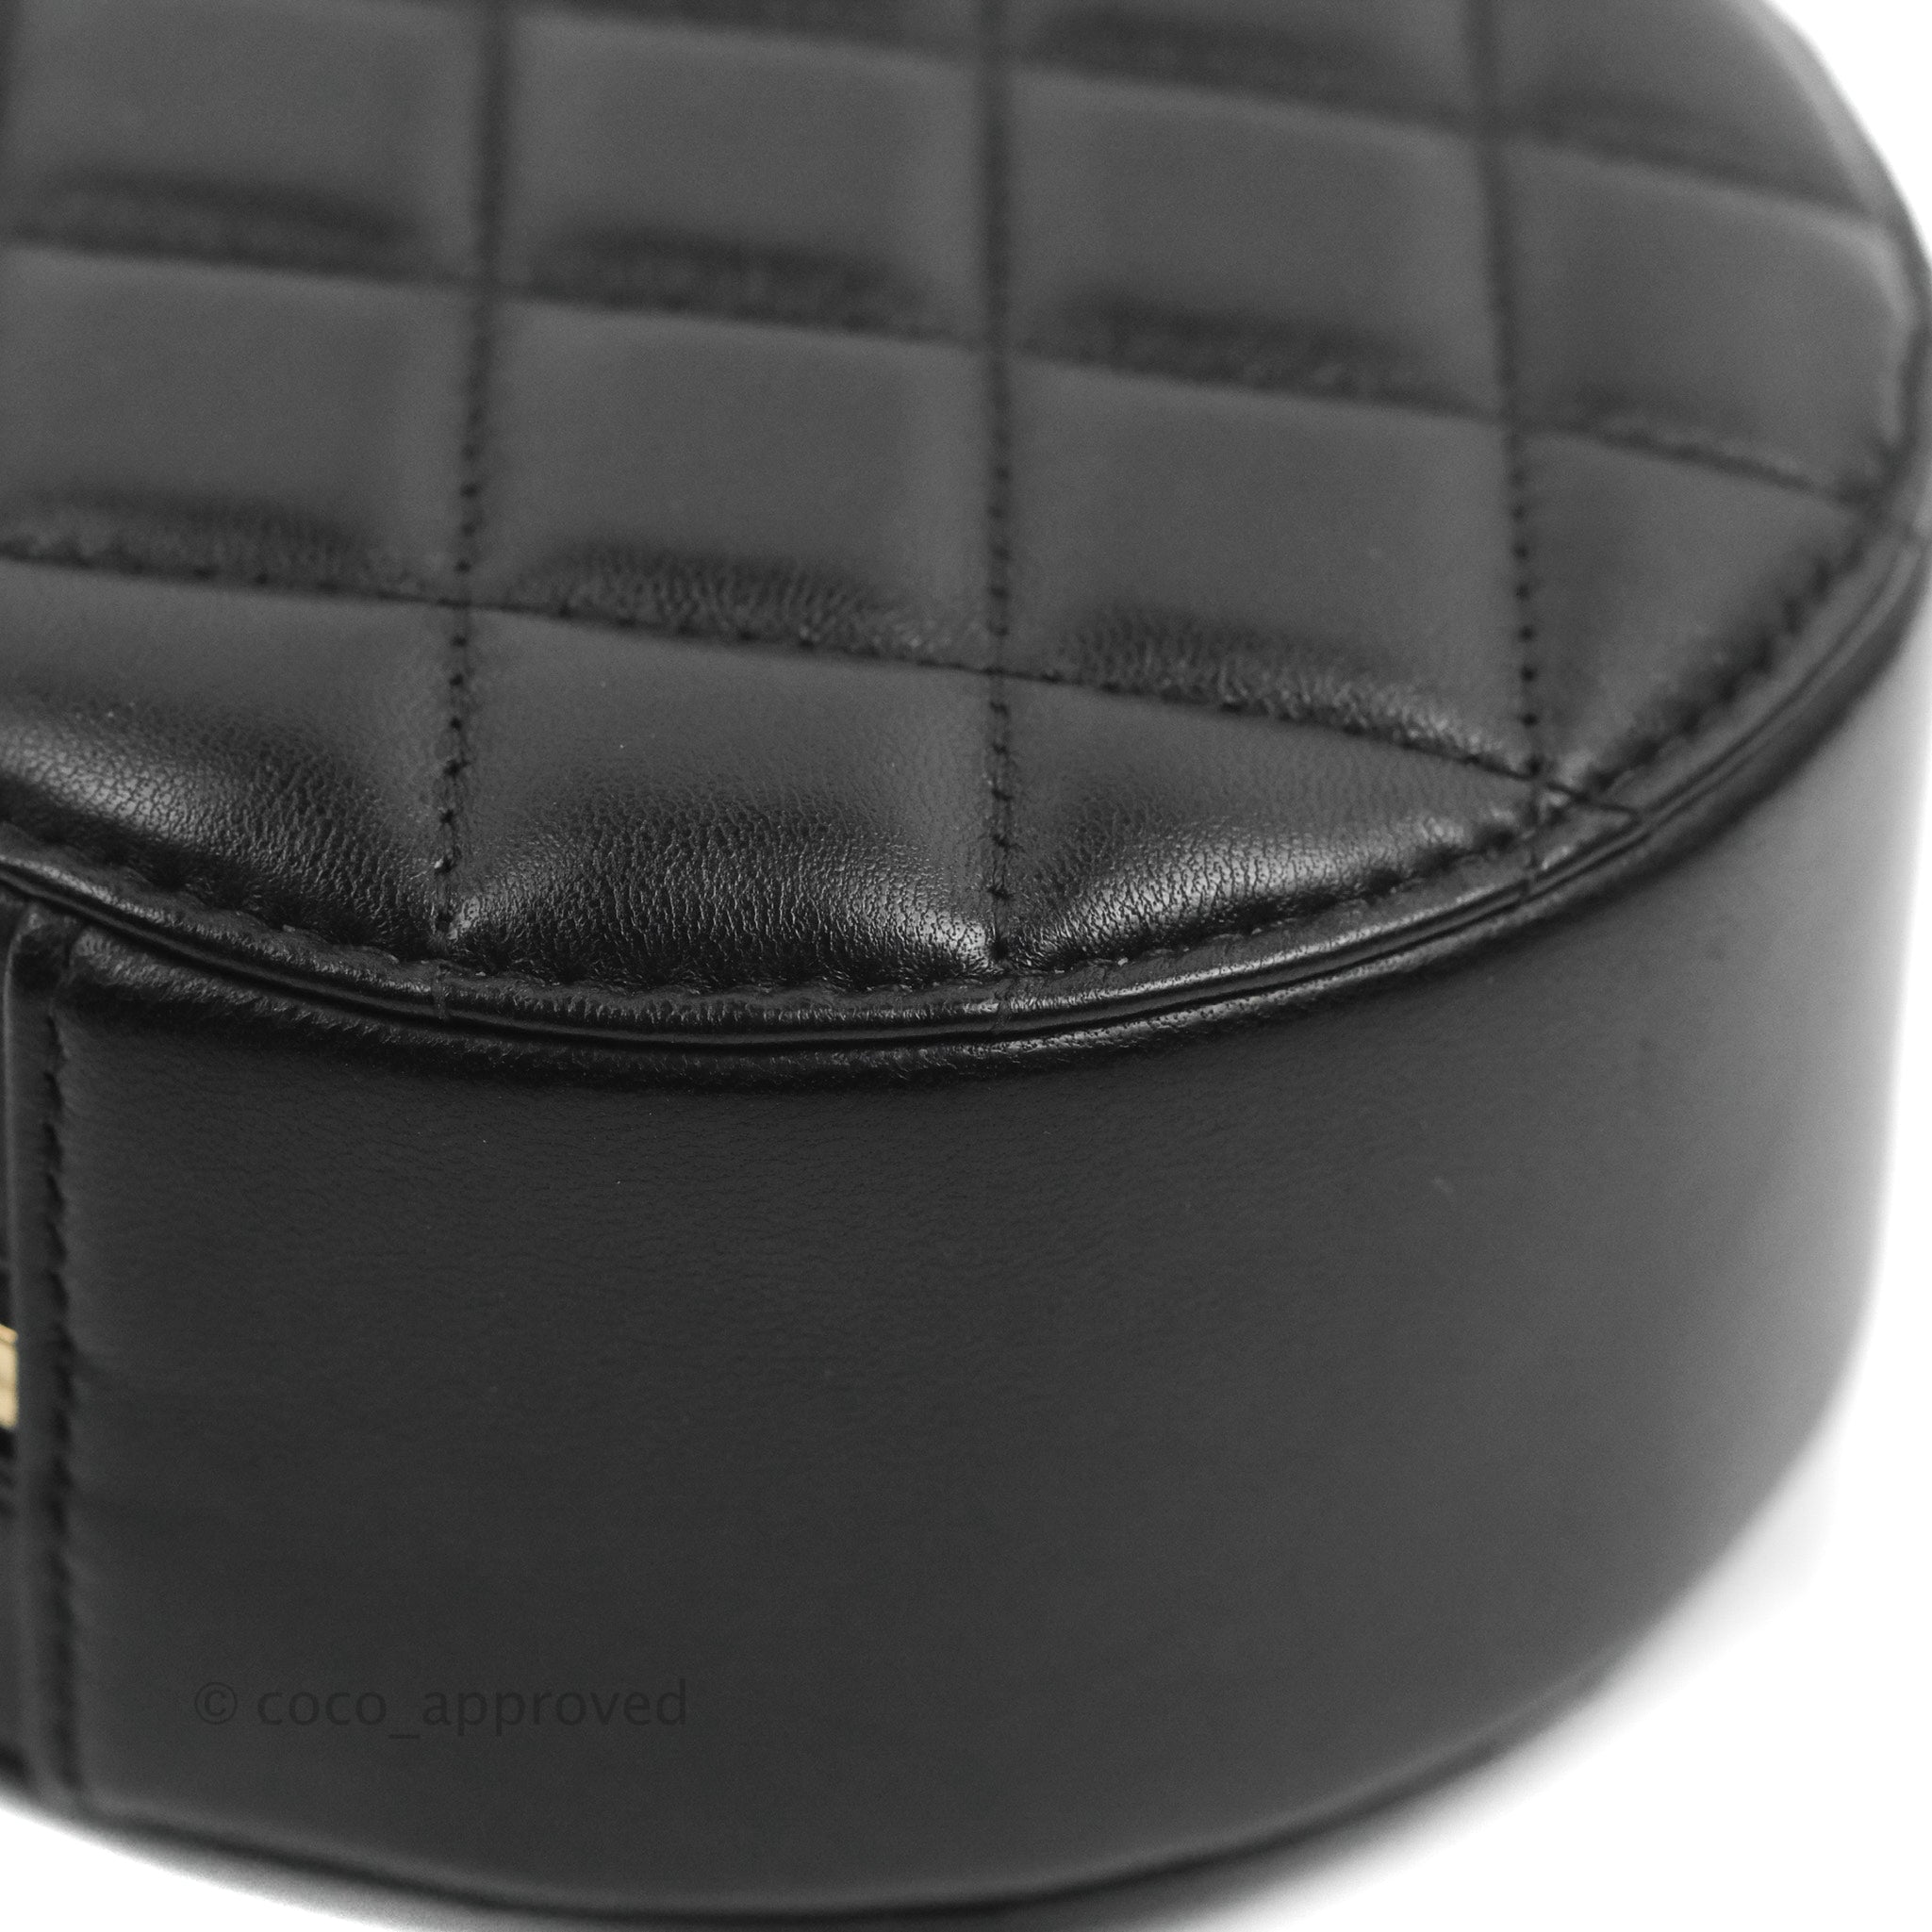 Chanel - Black Leather Chevron Clutch – Current Boutique